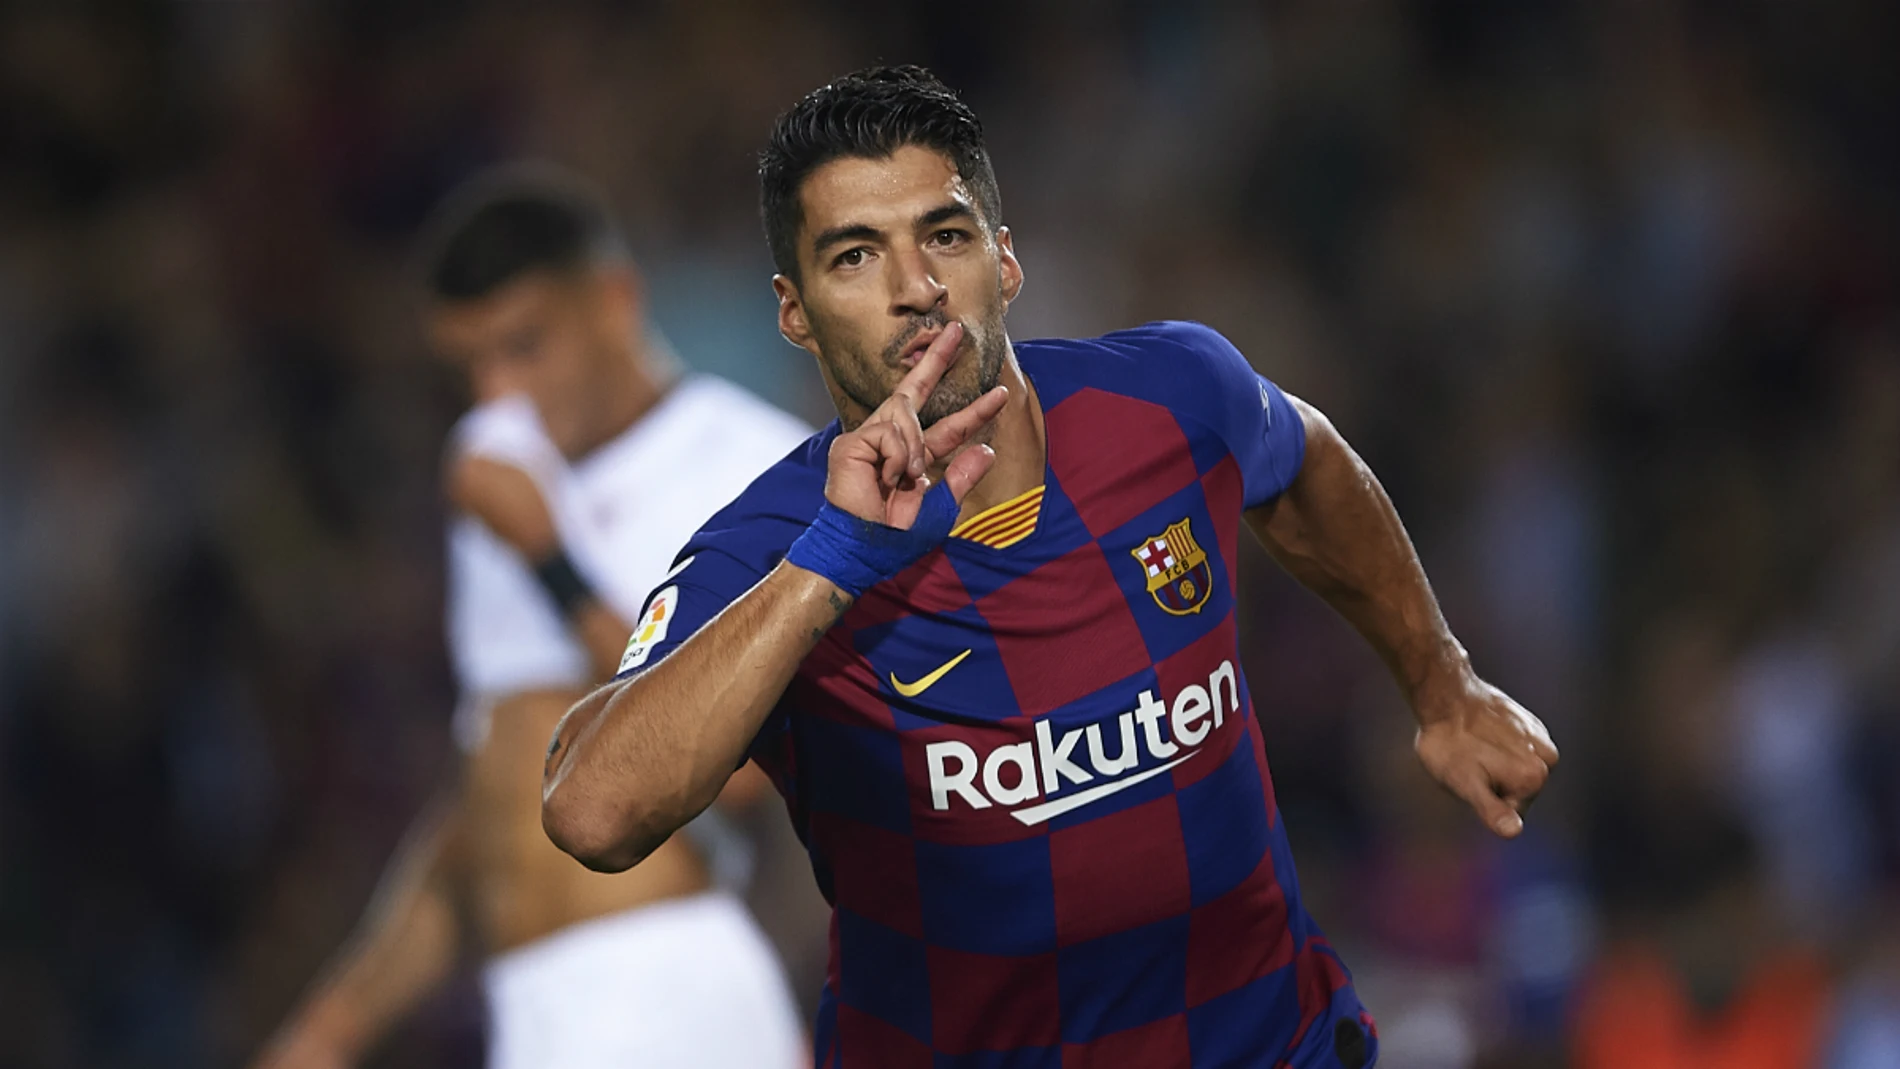 Luis Suárez celebra un gol